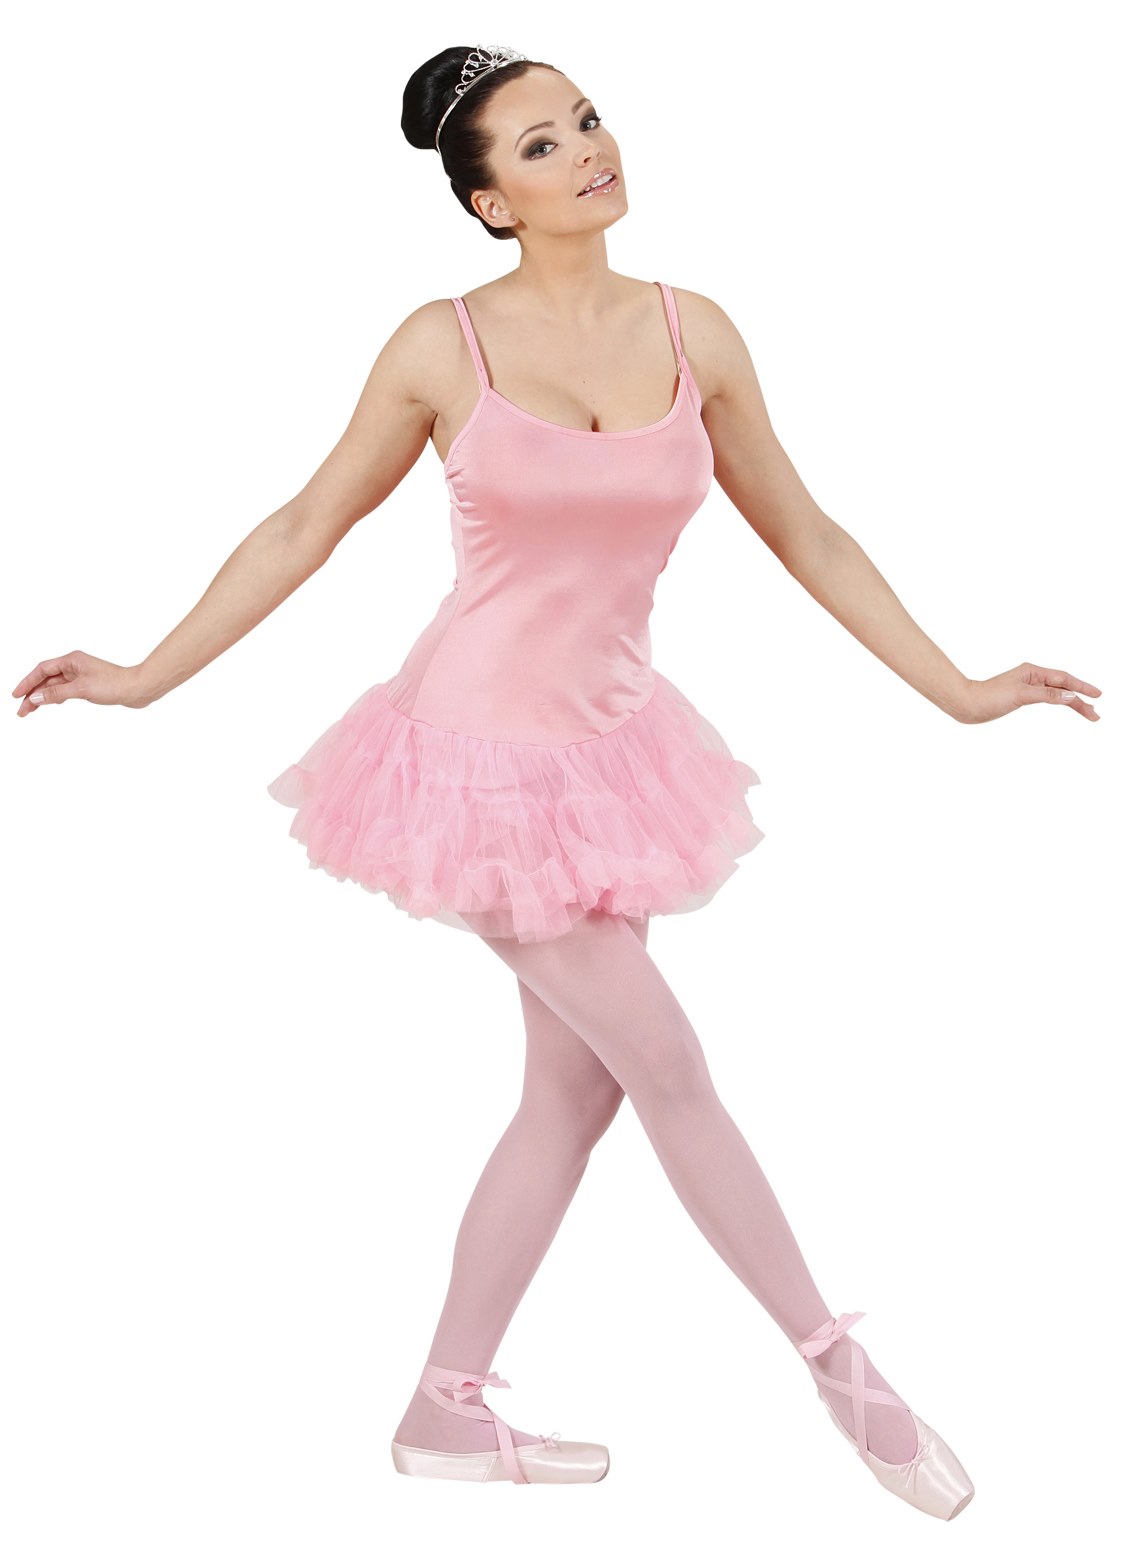 Disfraz Bailarina de Ballet rosa para adulta > Disfraces para Mujer >  Disfraces Colegialas y Deportes Mujer > Disfraces para Adultos